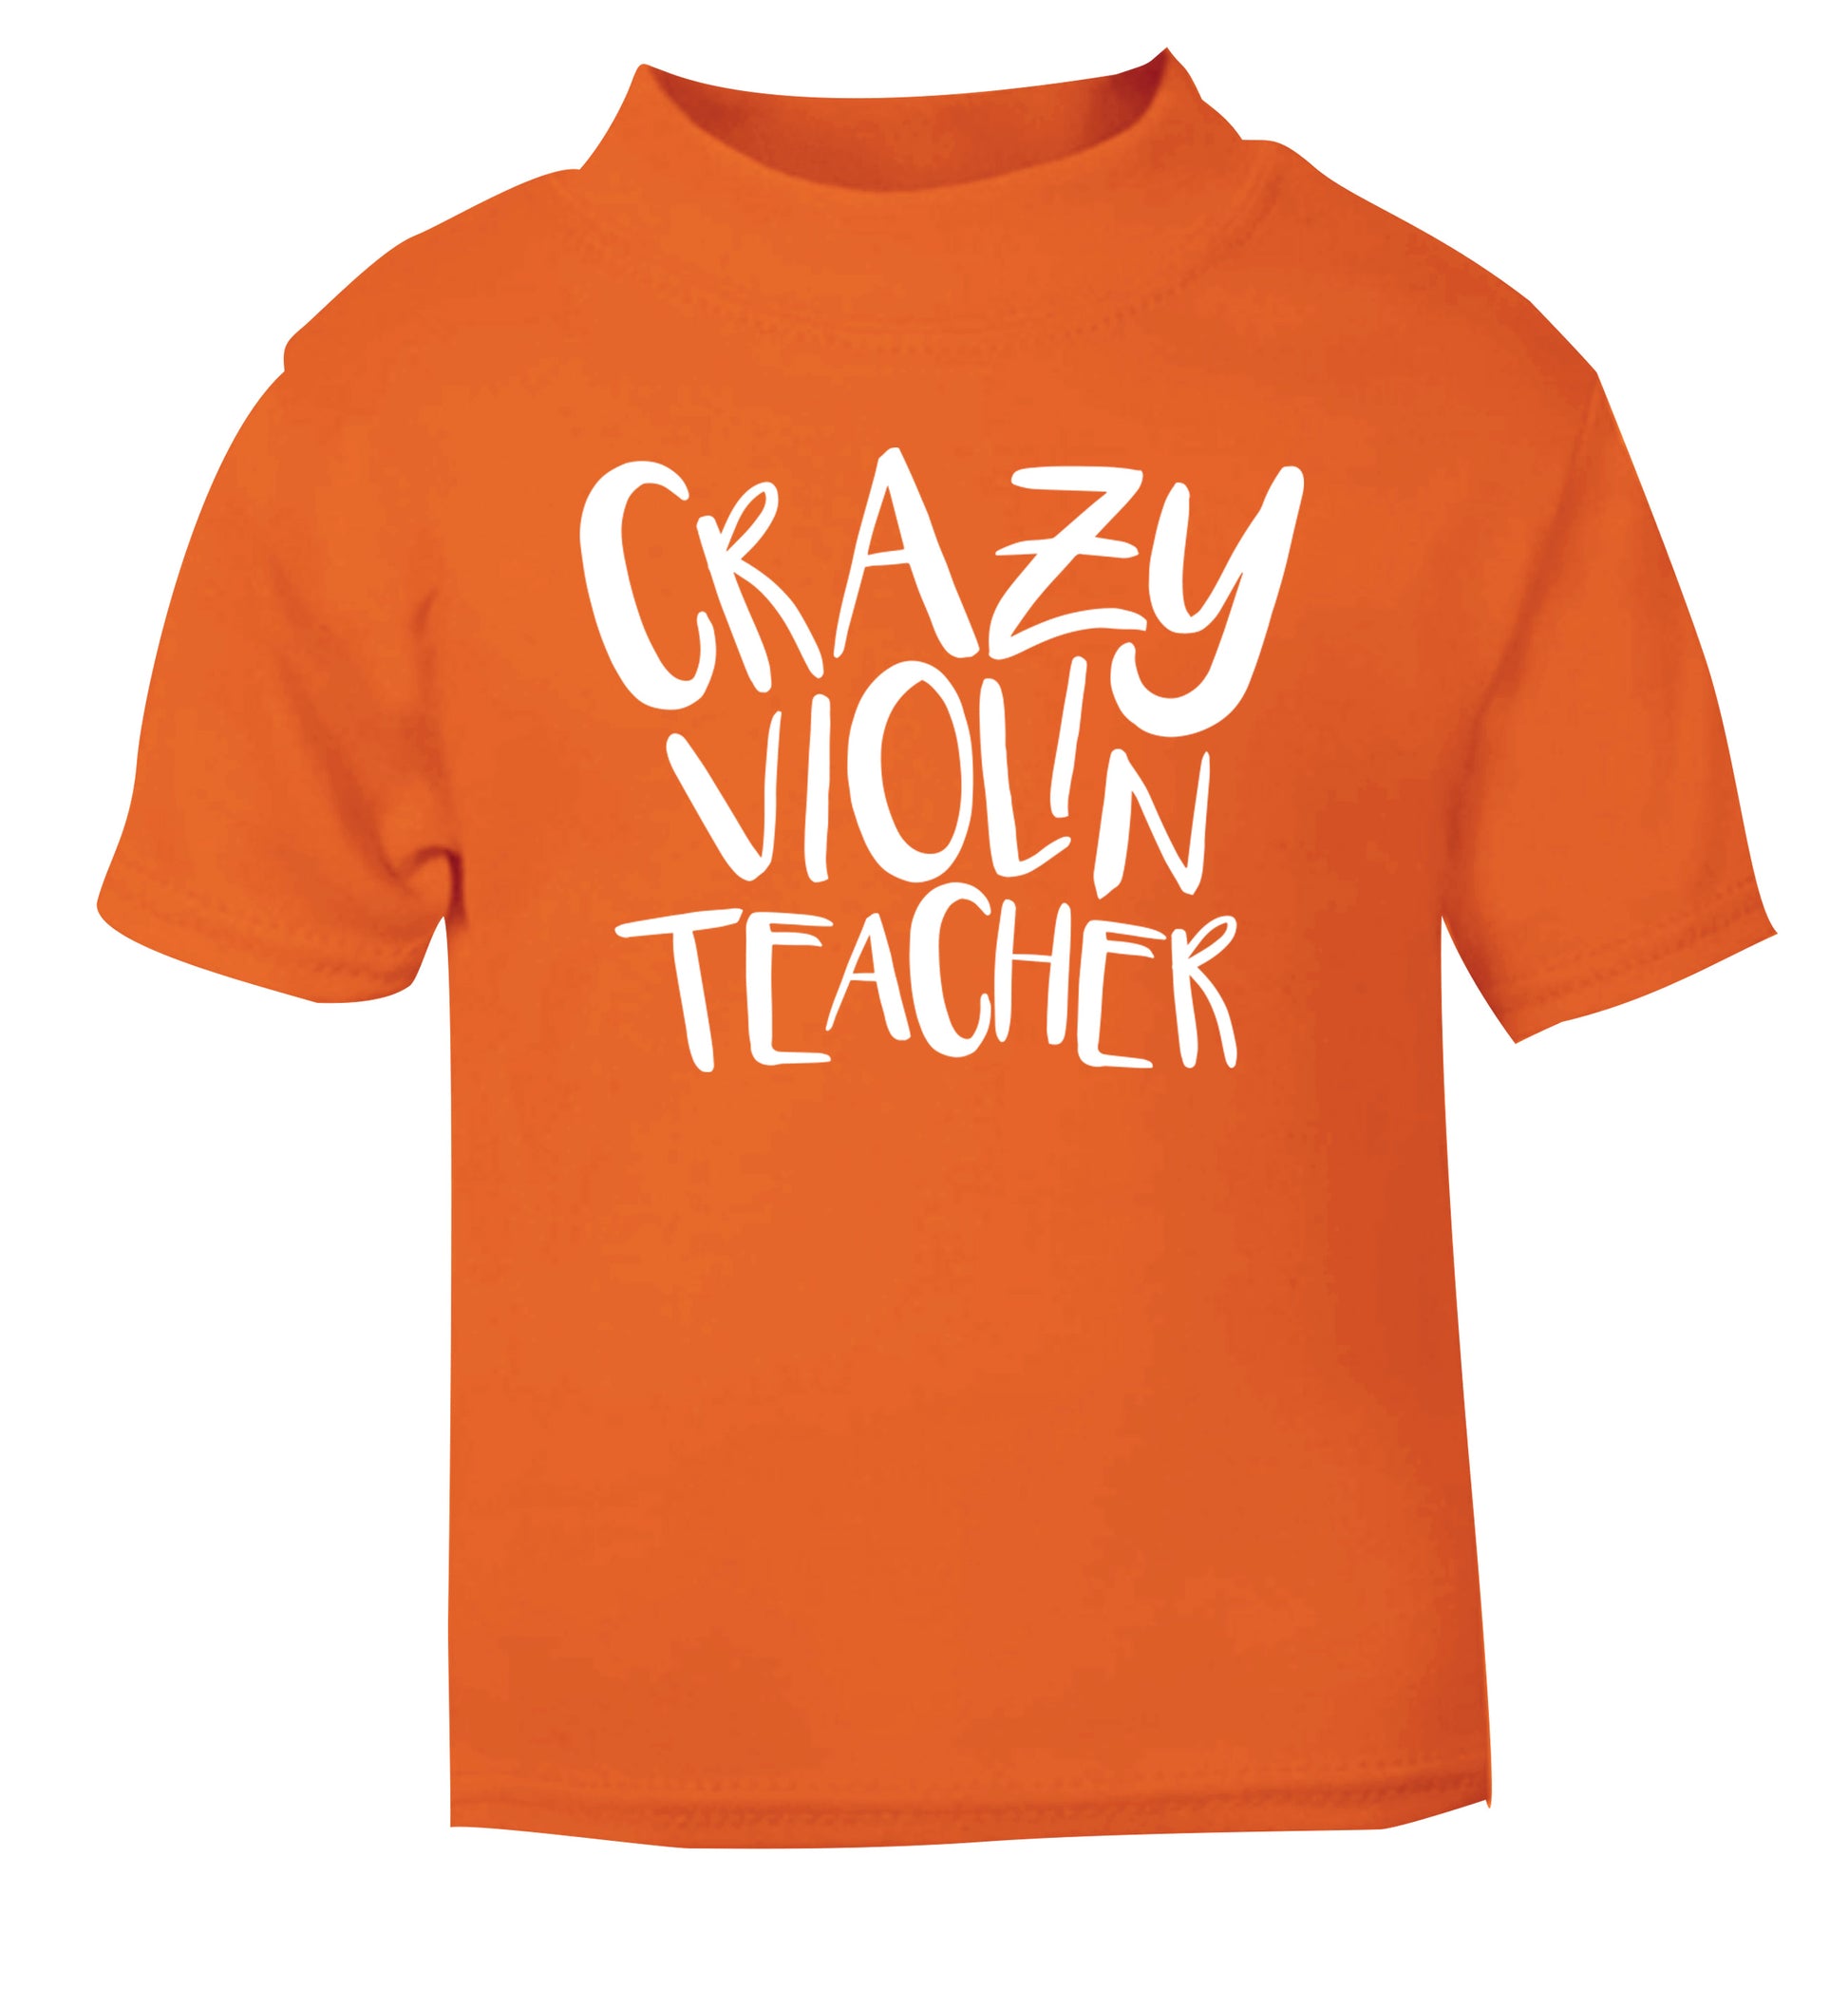 Crazy violin teacher orange Baby Toddler Tshirt 2 Years